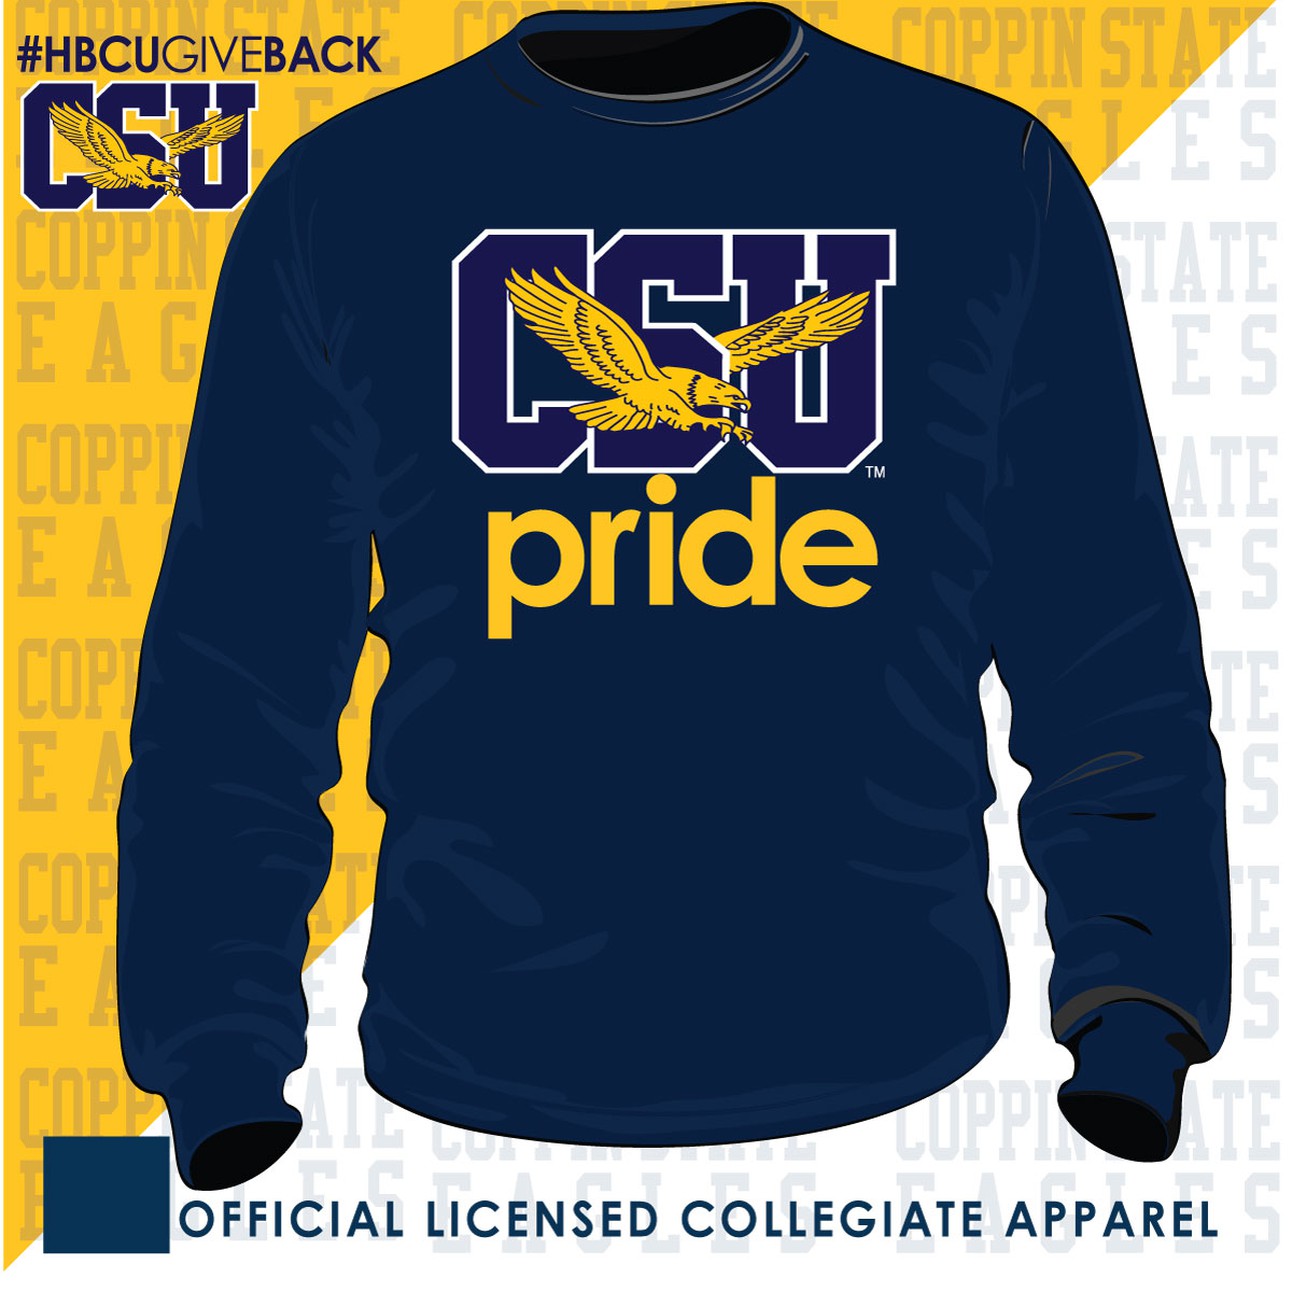 Coppin St. | SCHOOL PRIDE Navy Unisex Sweatshirt